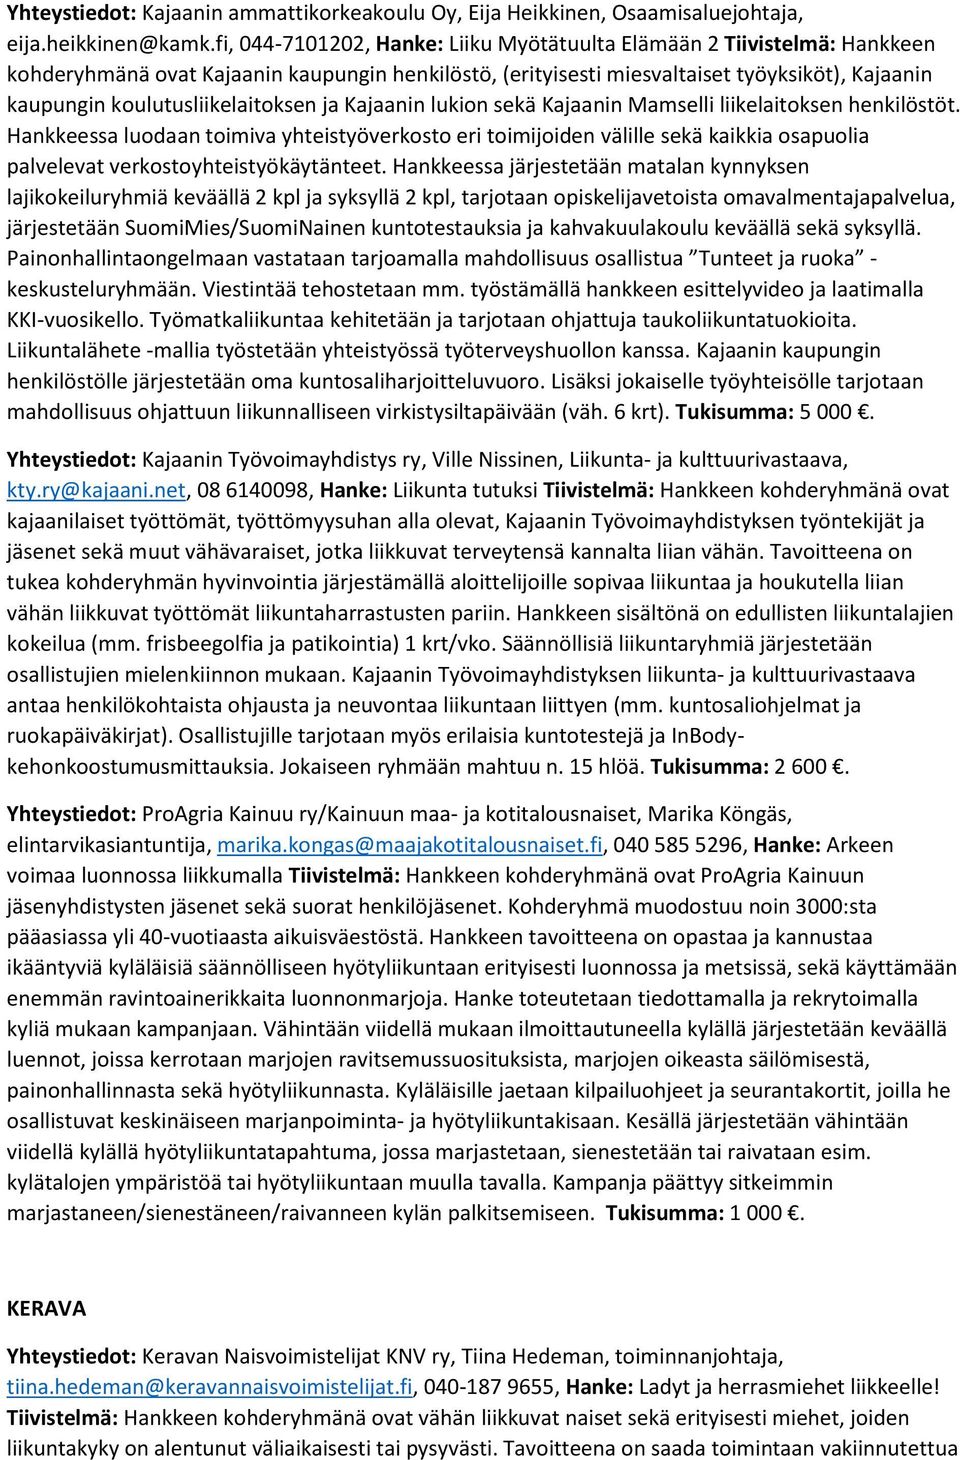 koulutusliikelaitoksen ja Kajaanin lukion sekä Kajaanin Mamselli liikelaitoksen henkilöstöt.